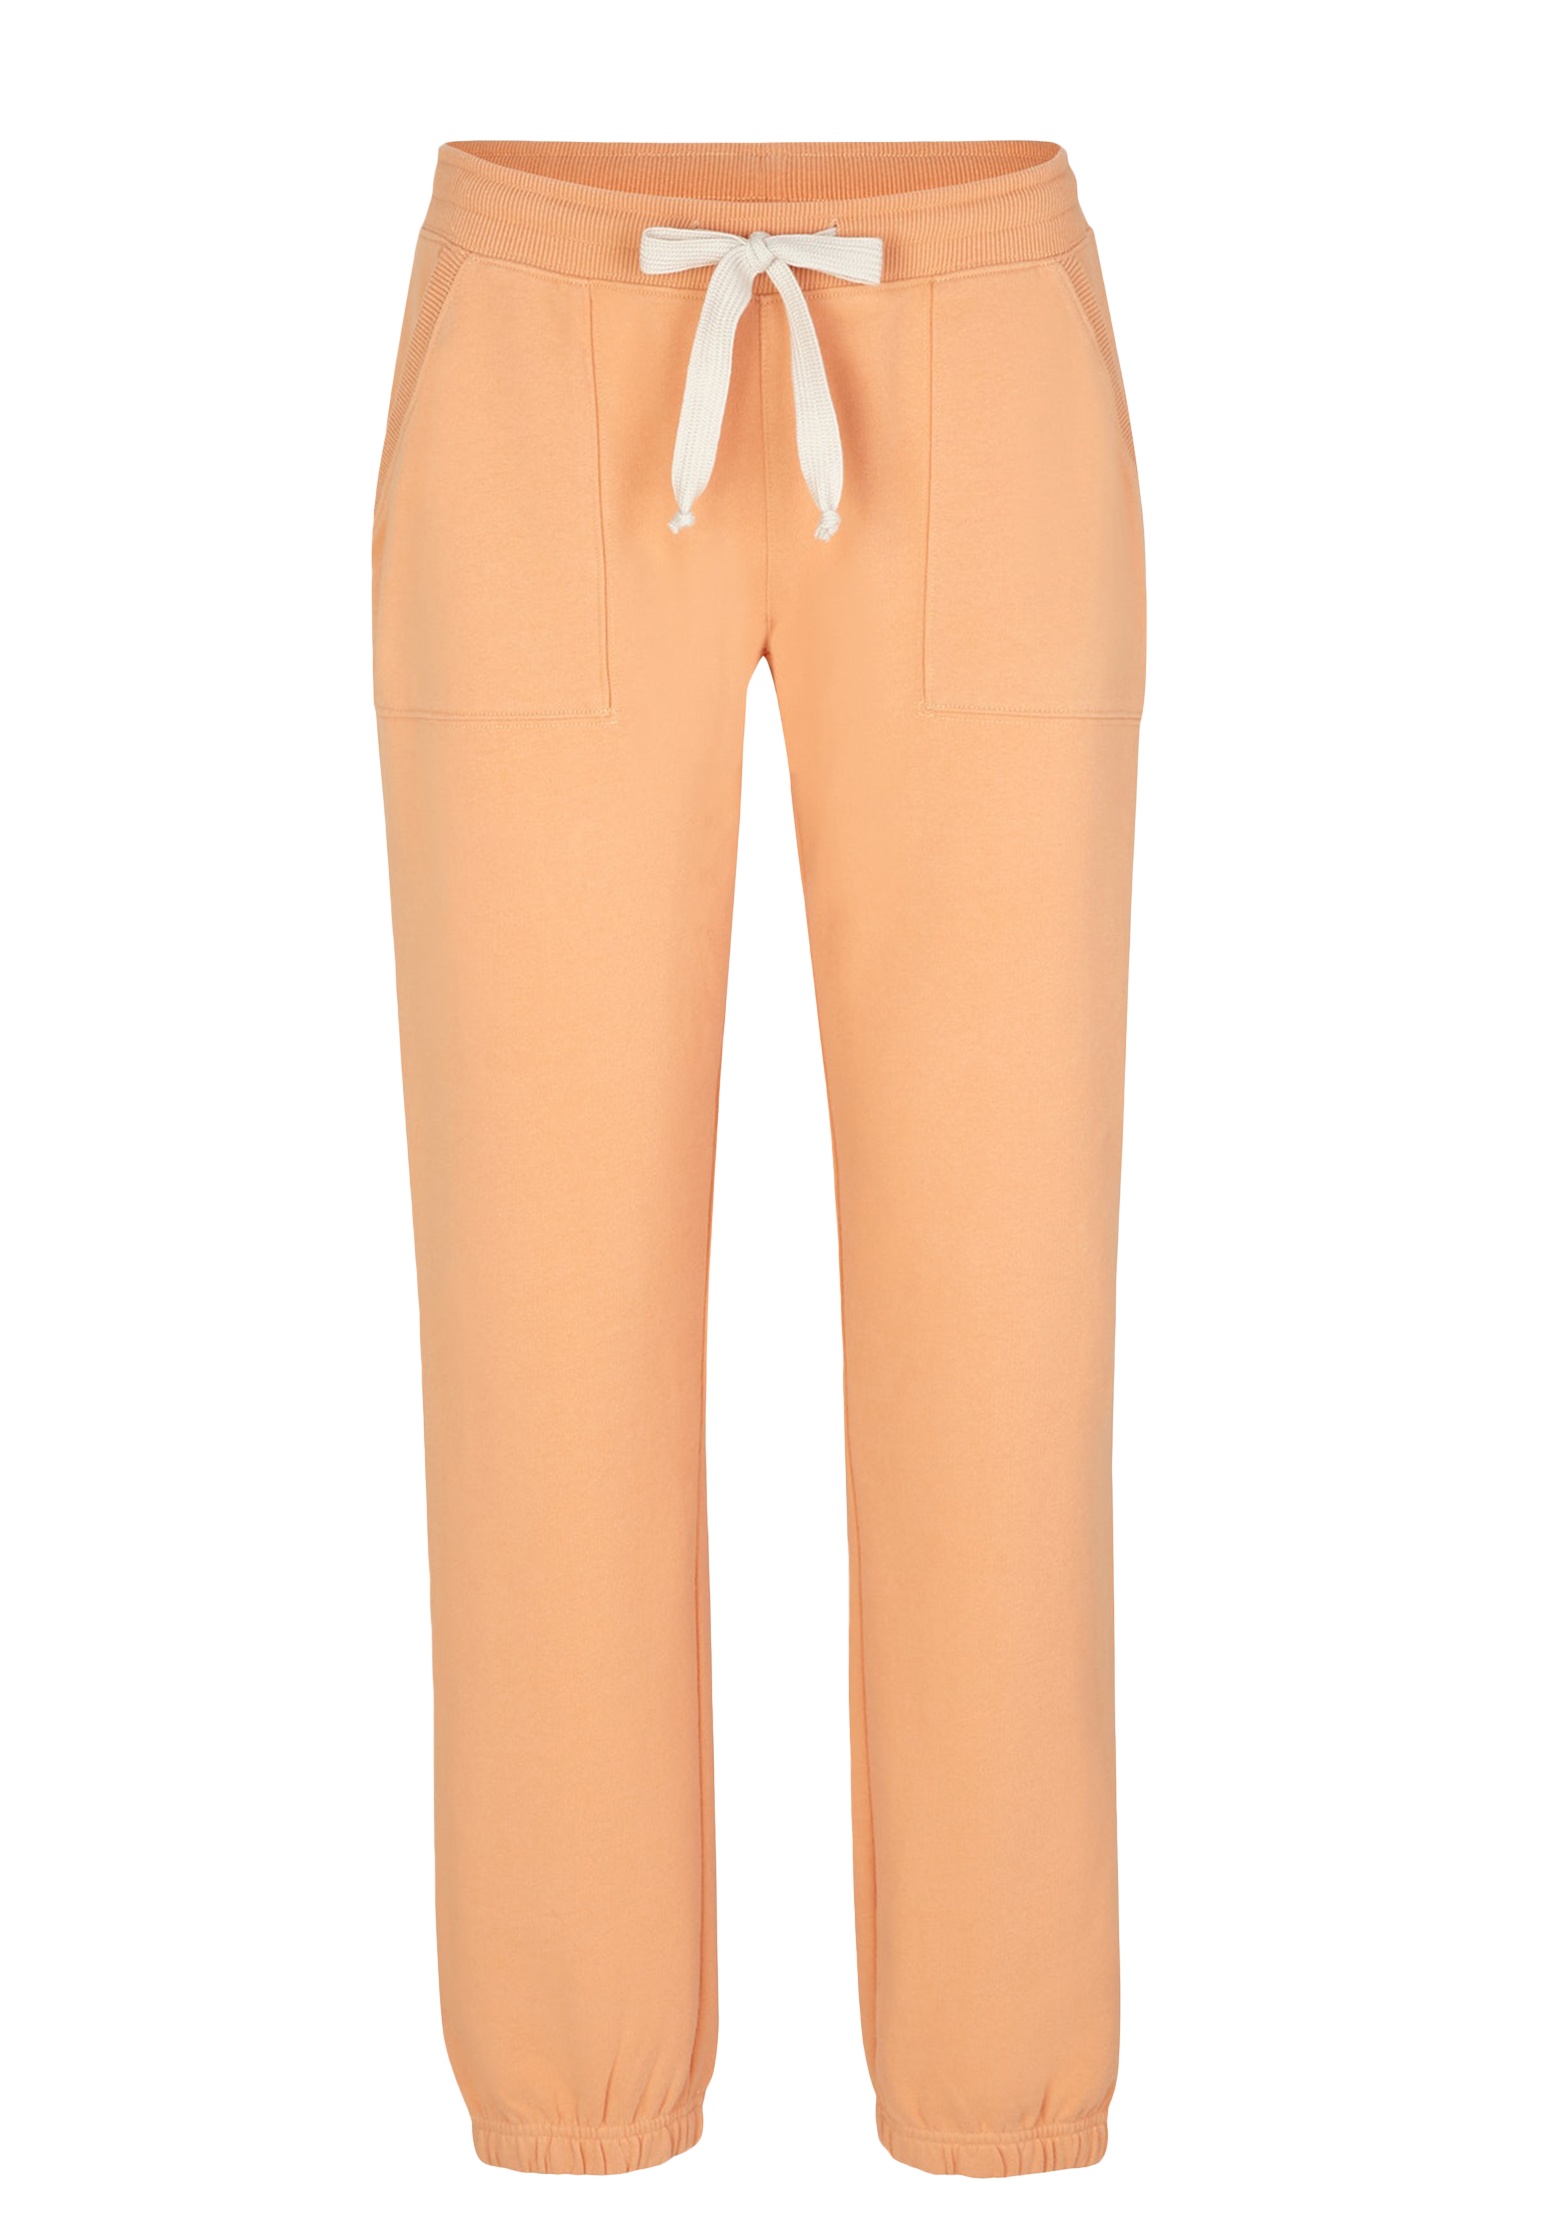 Спортивные брюки женские Juvia 143247 оранжевые M